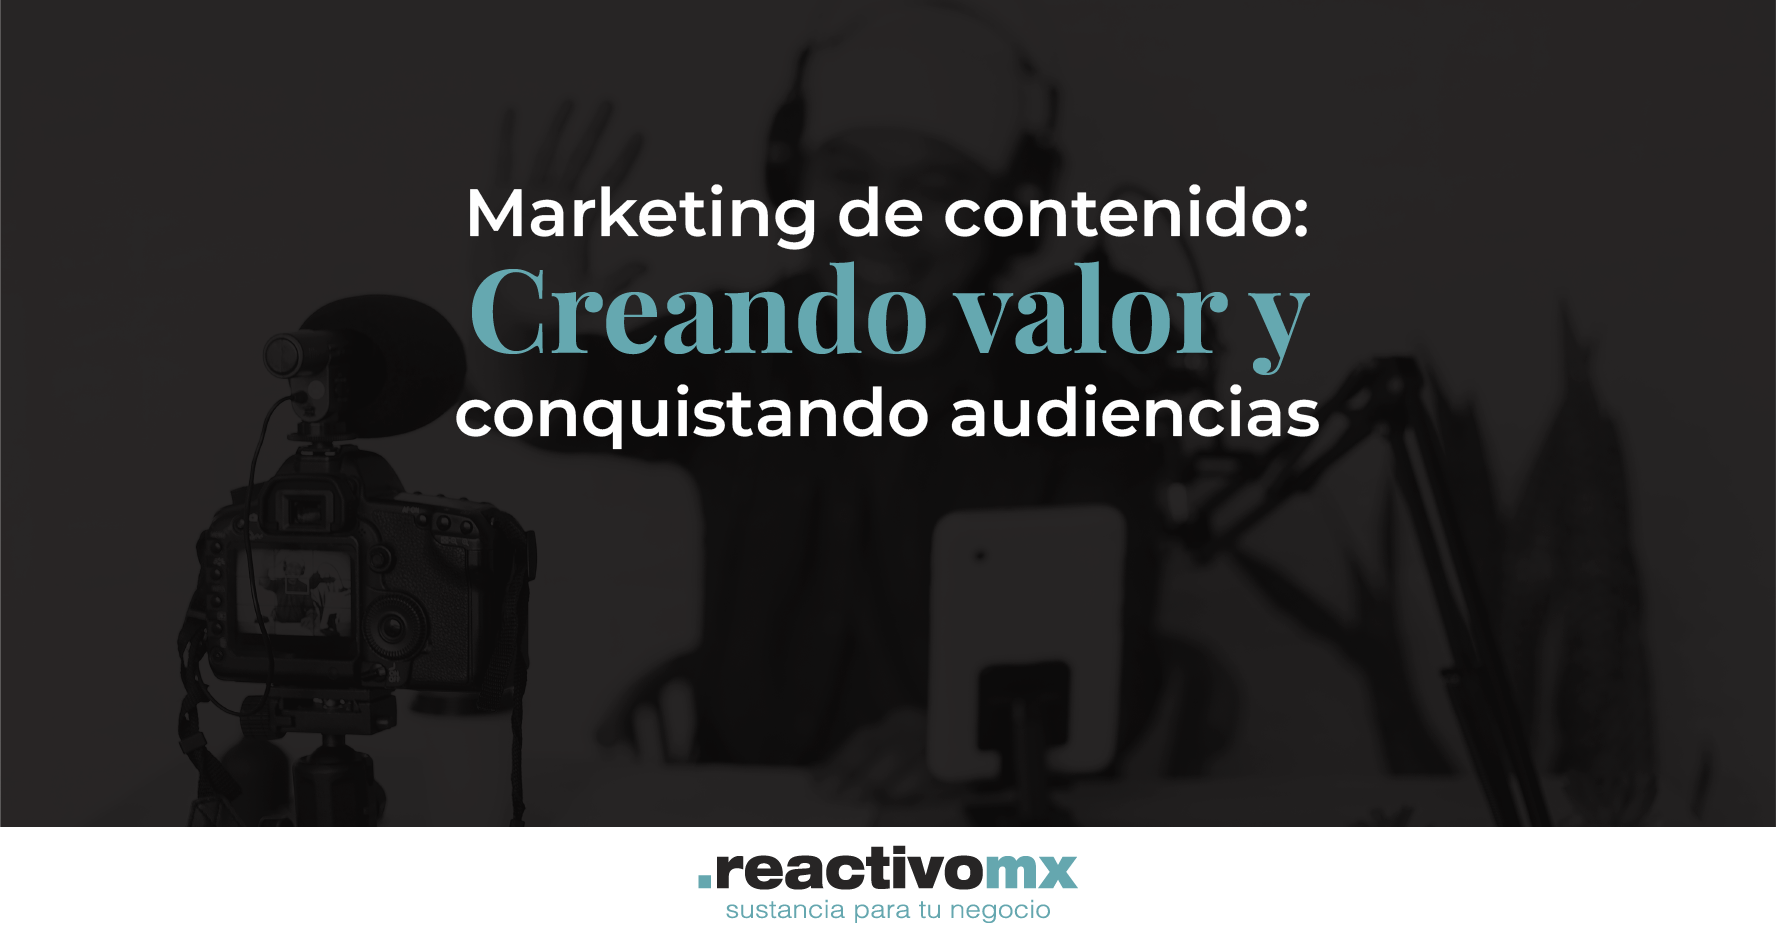 Marketing de contenido: Creando valor y conquistando audiencias